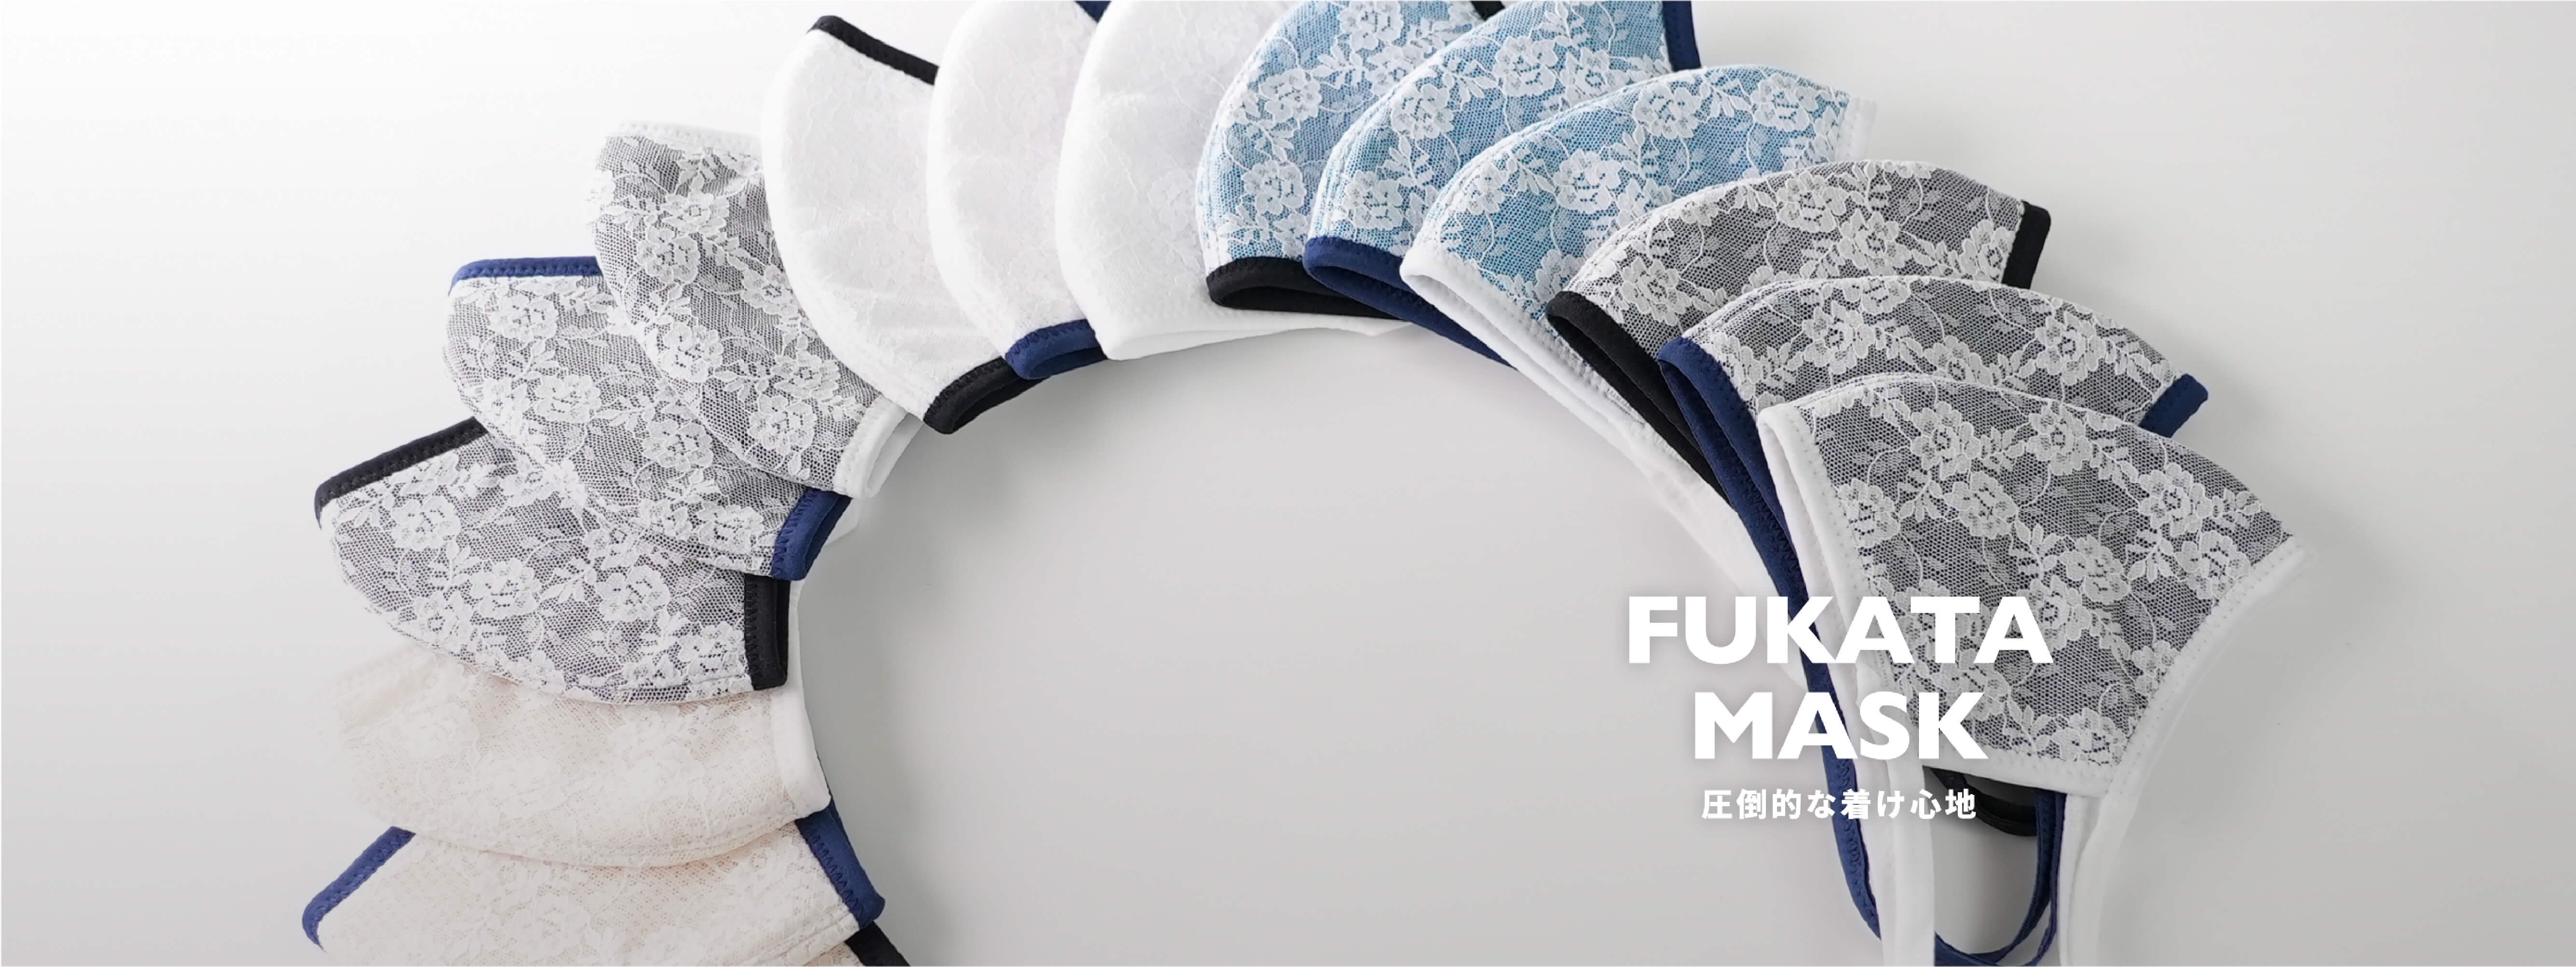 深田縫製レース付き3D立体布マスクの5色(ネイビー、ホワイト、ブルー、ブラック、ベージュ)